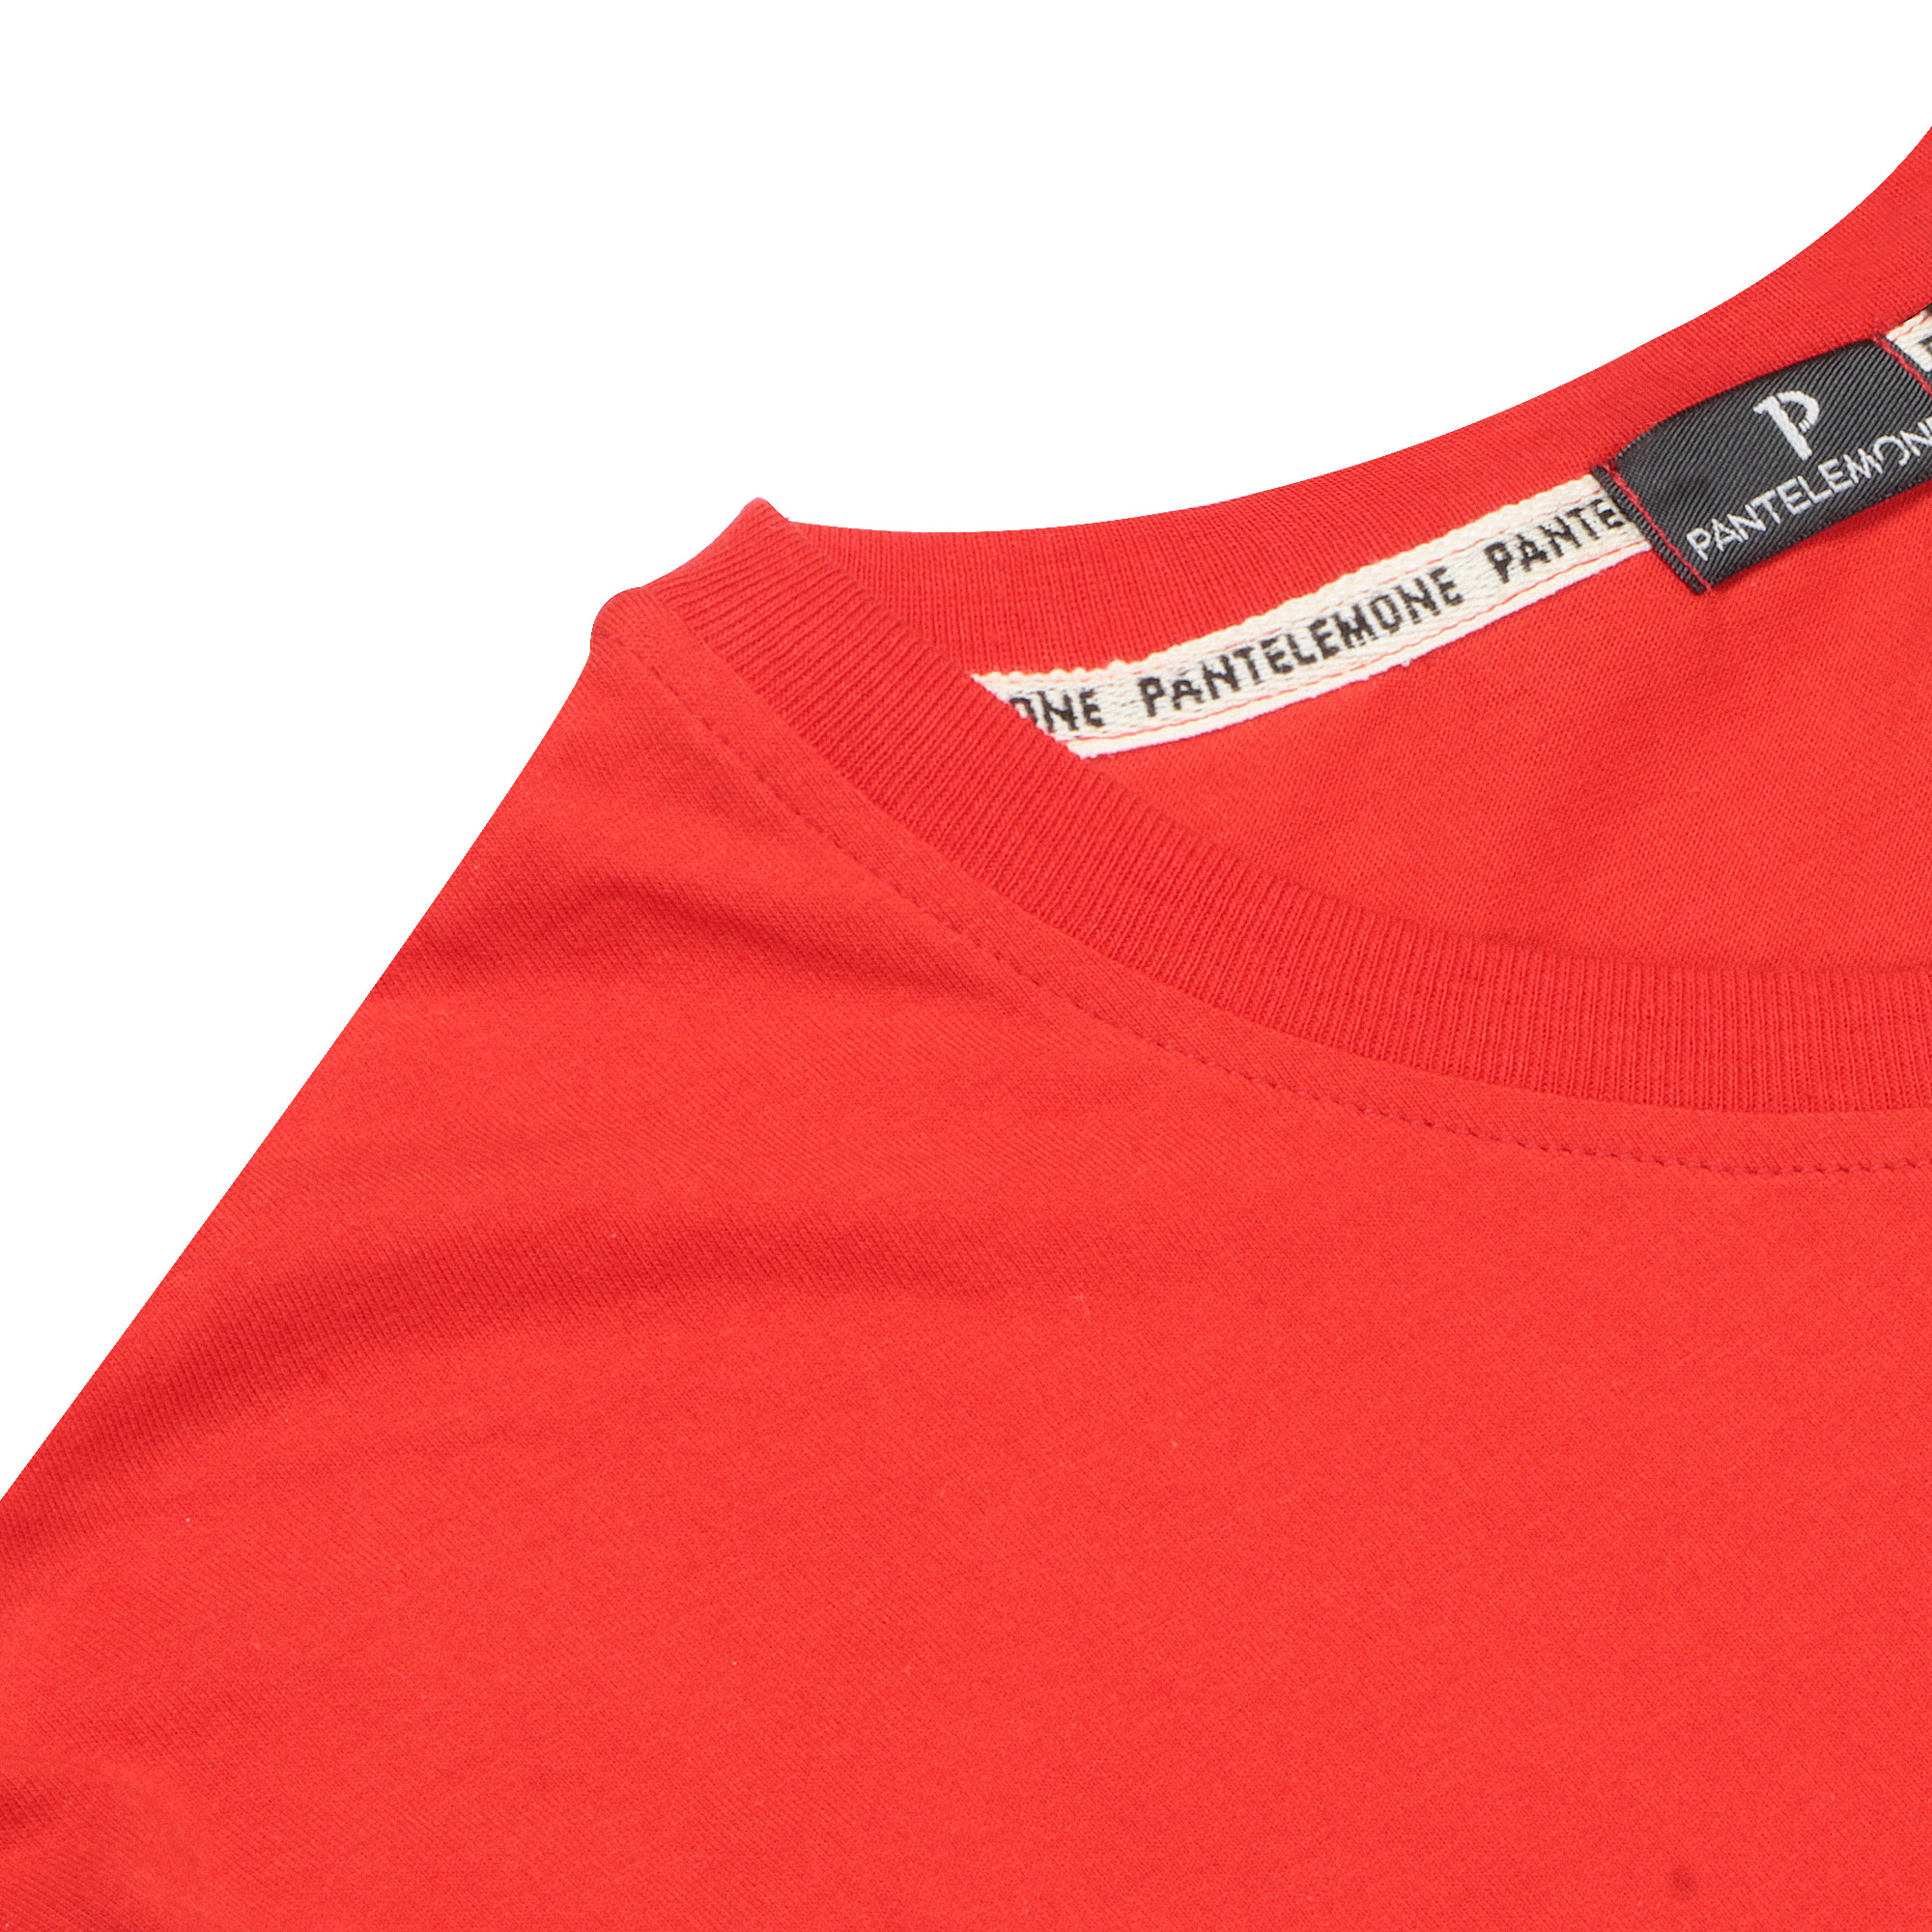 Мужская футболка Pantelemone MF-898 красная 54, цвет красный, размер 54 - фото 3